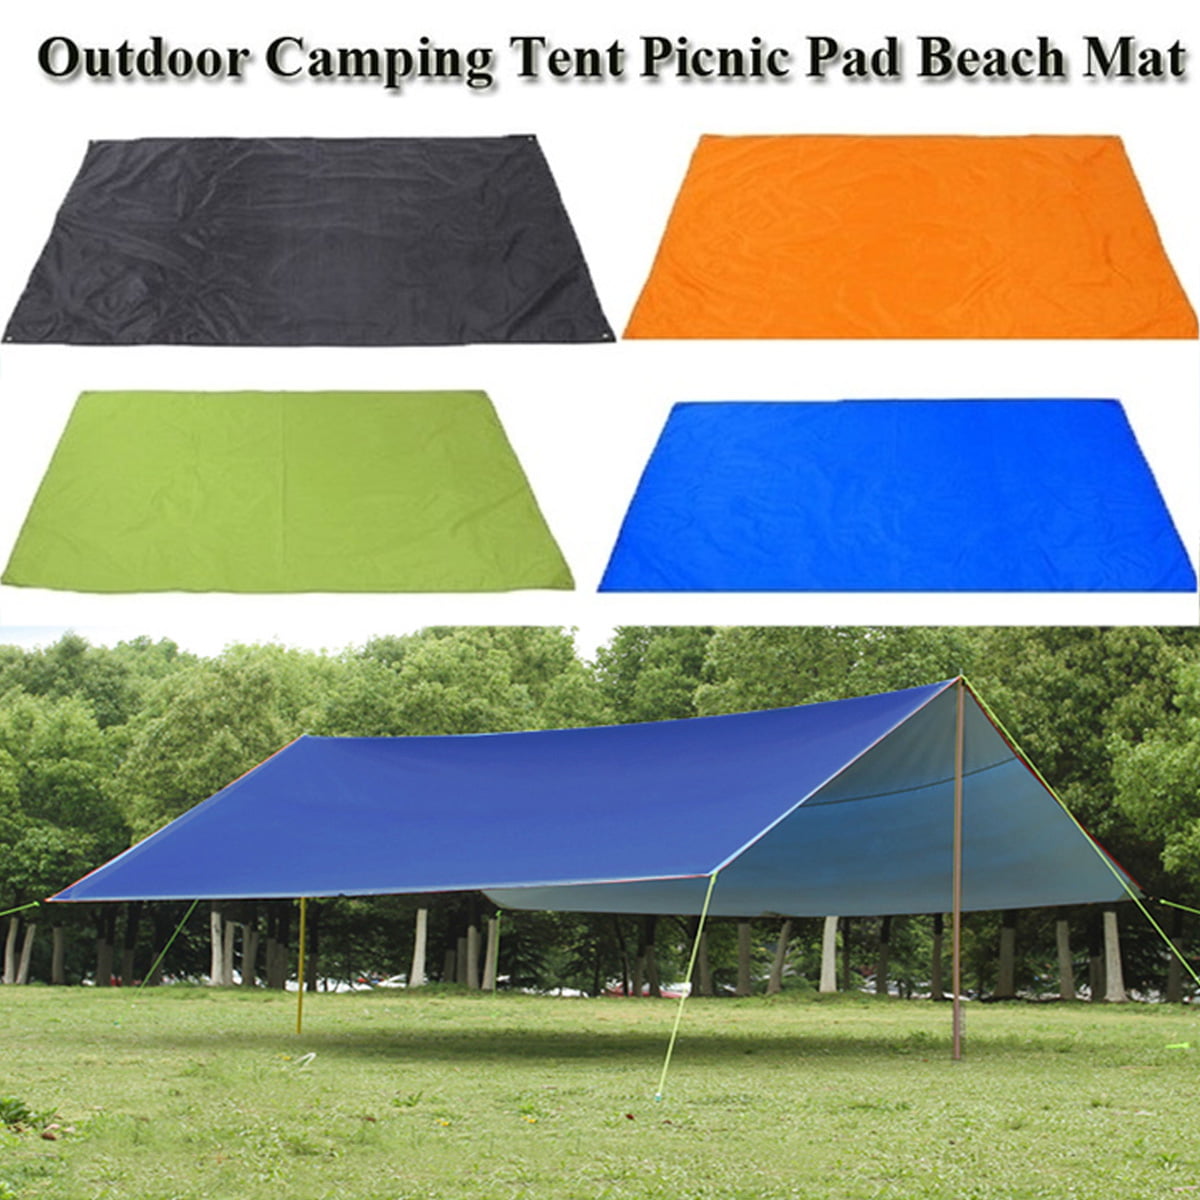 Tent Tarp Sun Shade Rain Shelter Beach Camping Picnic Pad Waterproof Nylon Mat 